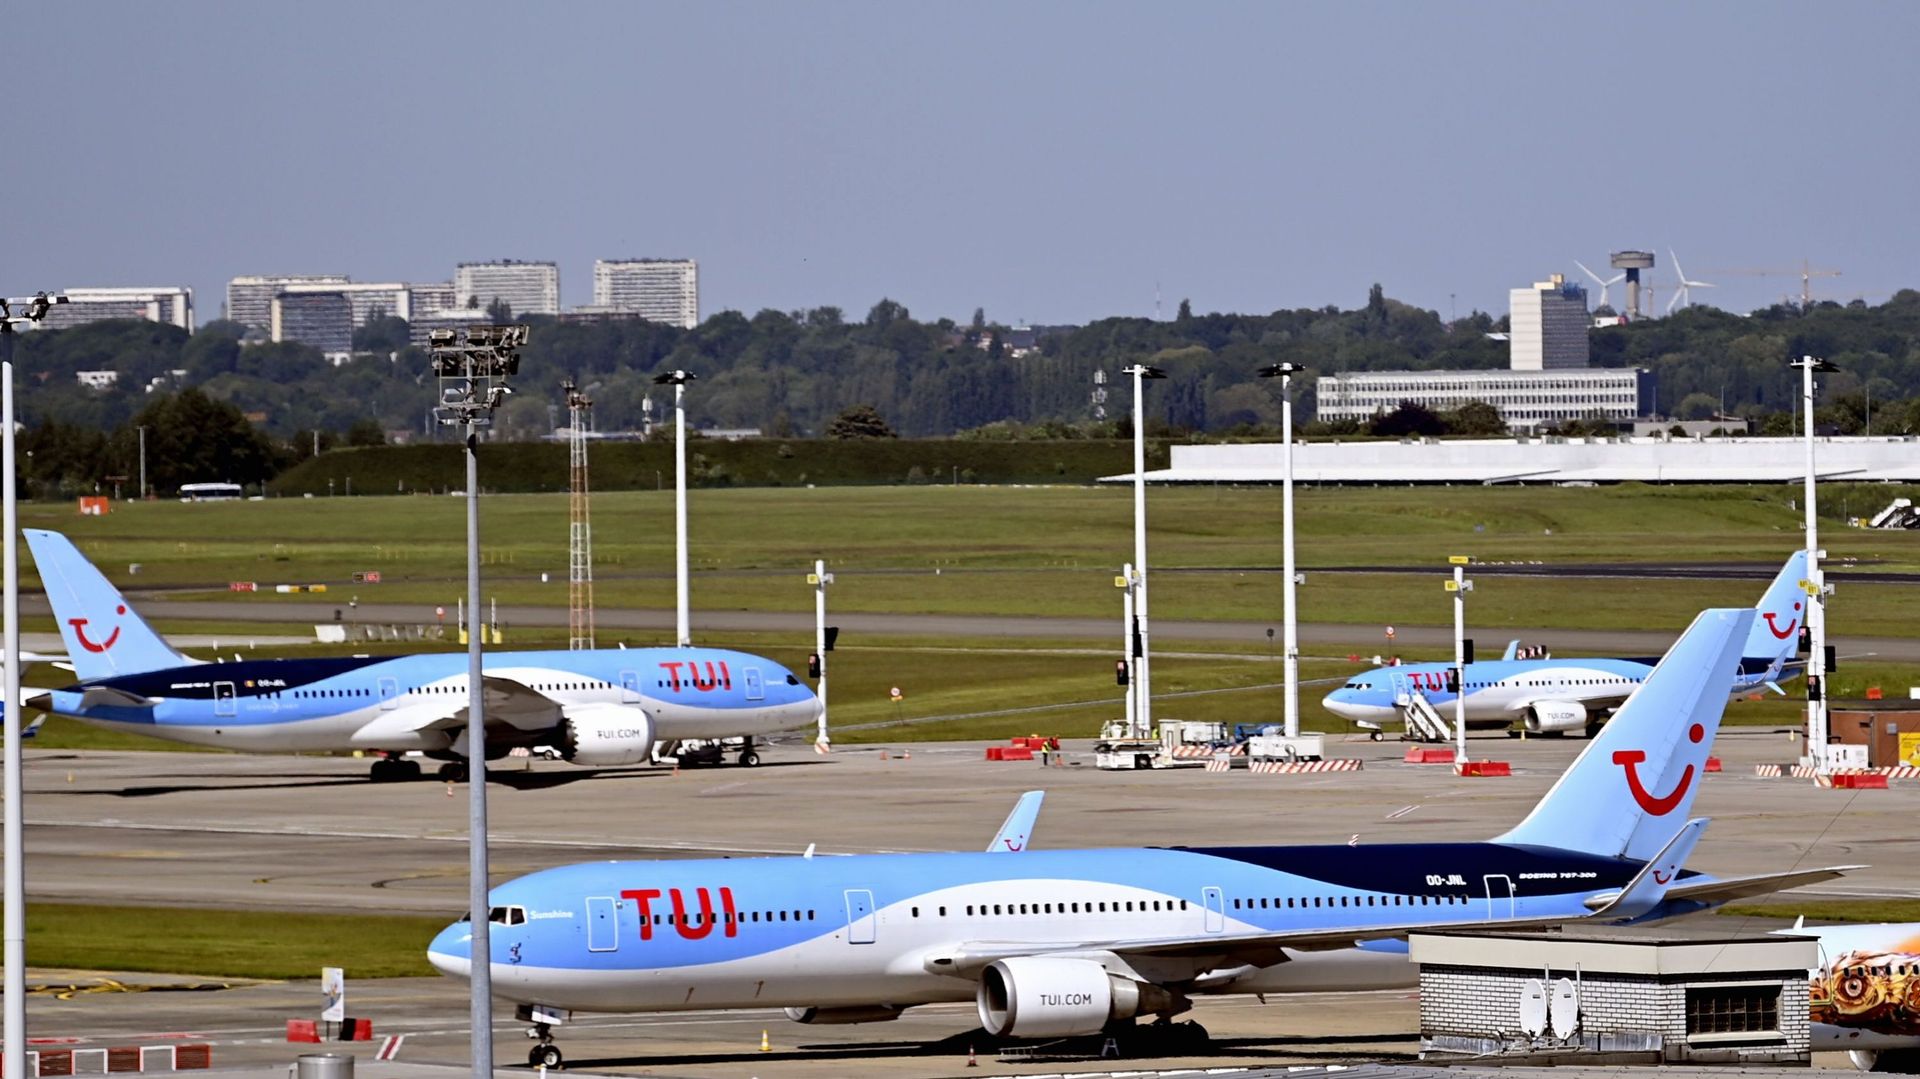 L’annonce d’une "taxe avion" devait initialement concerner les vols de transit au départ d’aéroports belges de moins de 500 km afin d’encourager les alternatives comme le train, par exemple.